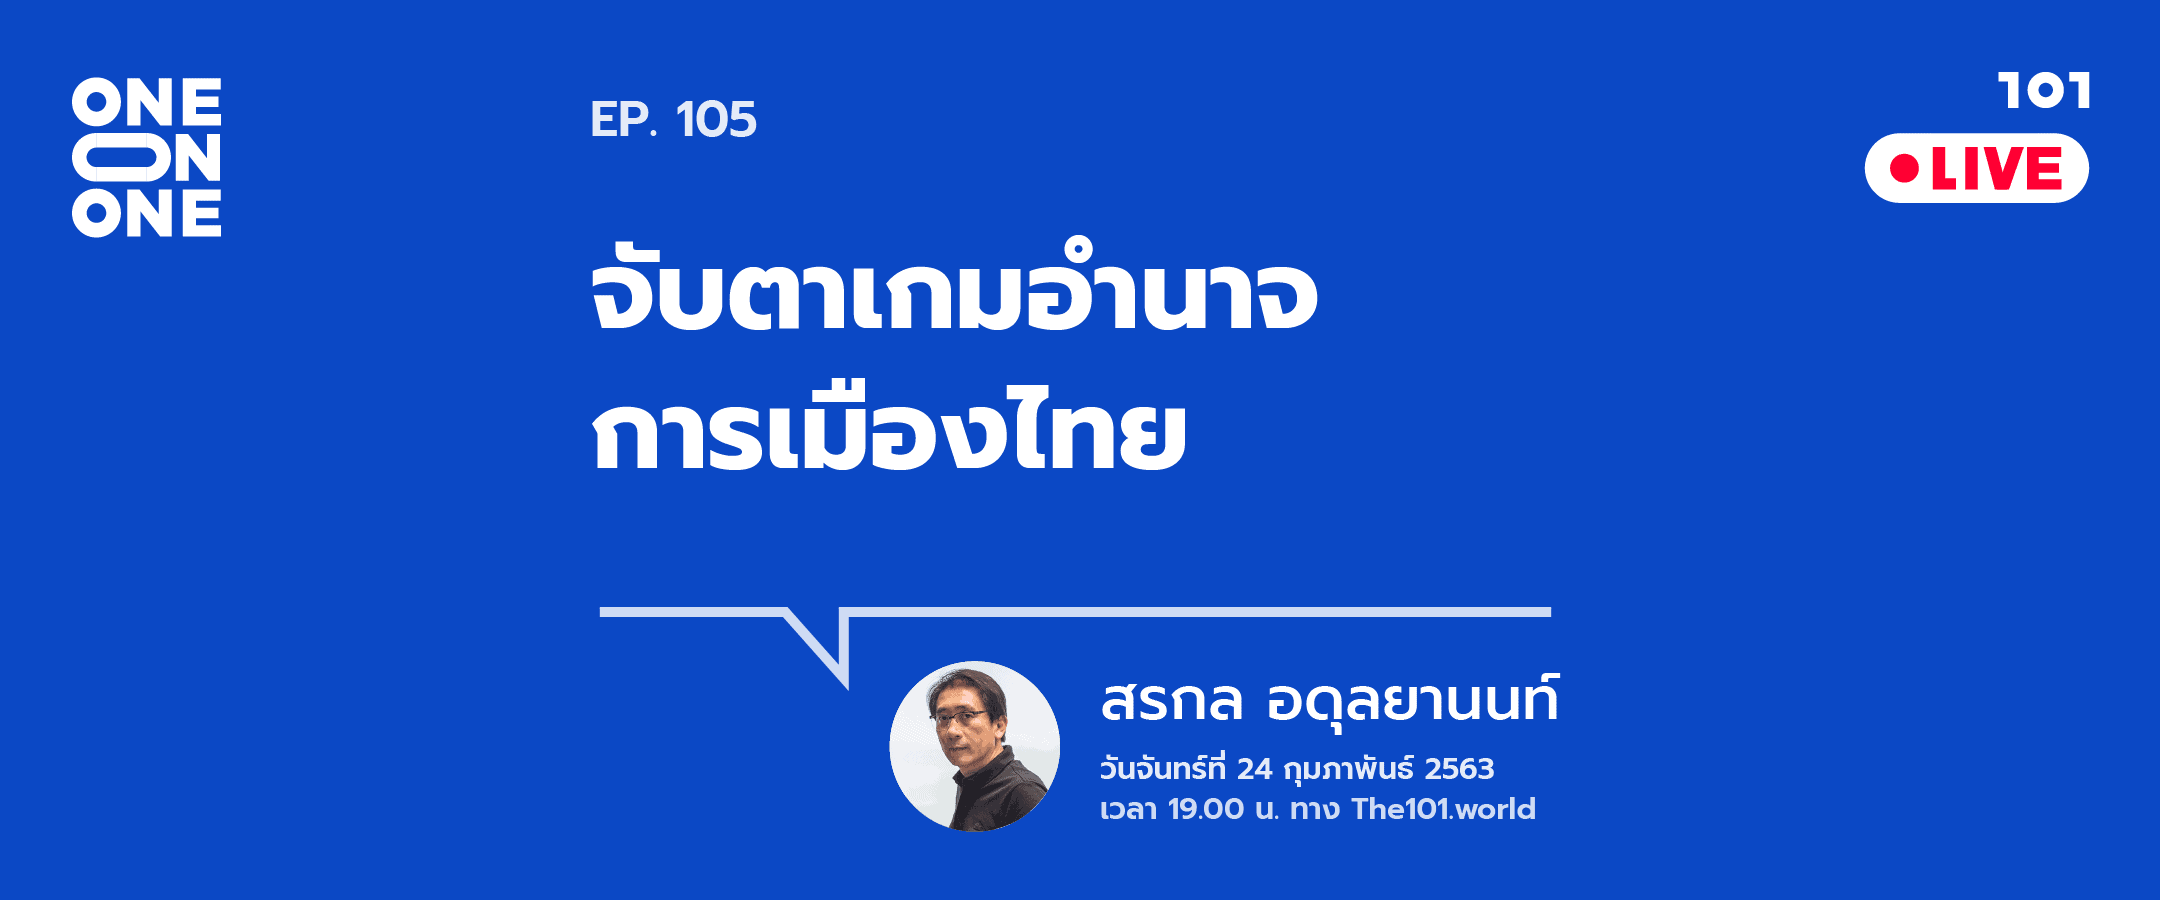 101 One-on-One ep.105 “จับตาเกมอำนาจการเมืองไทย” กับ สรกล อดุลยานนท์